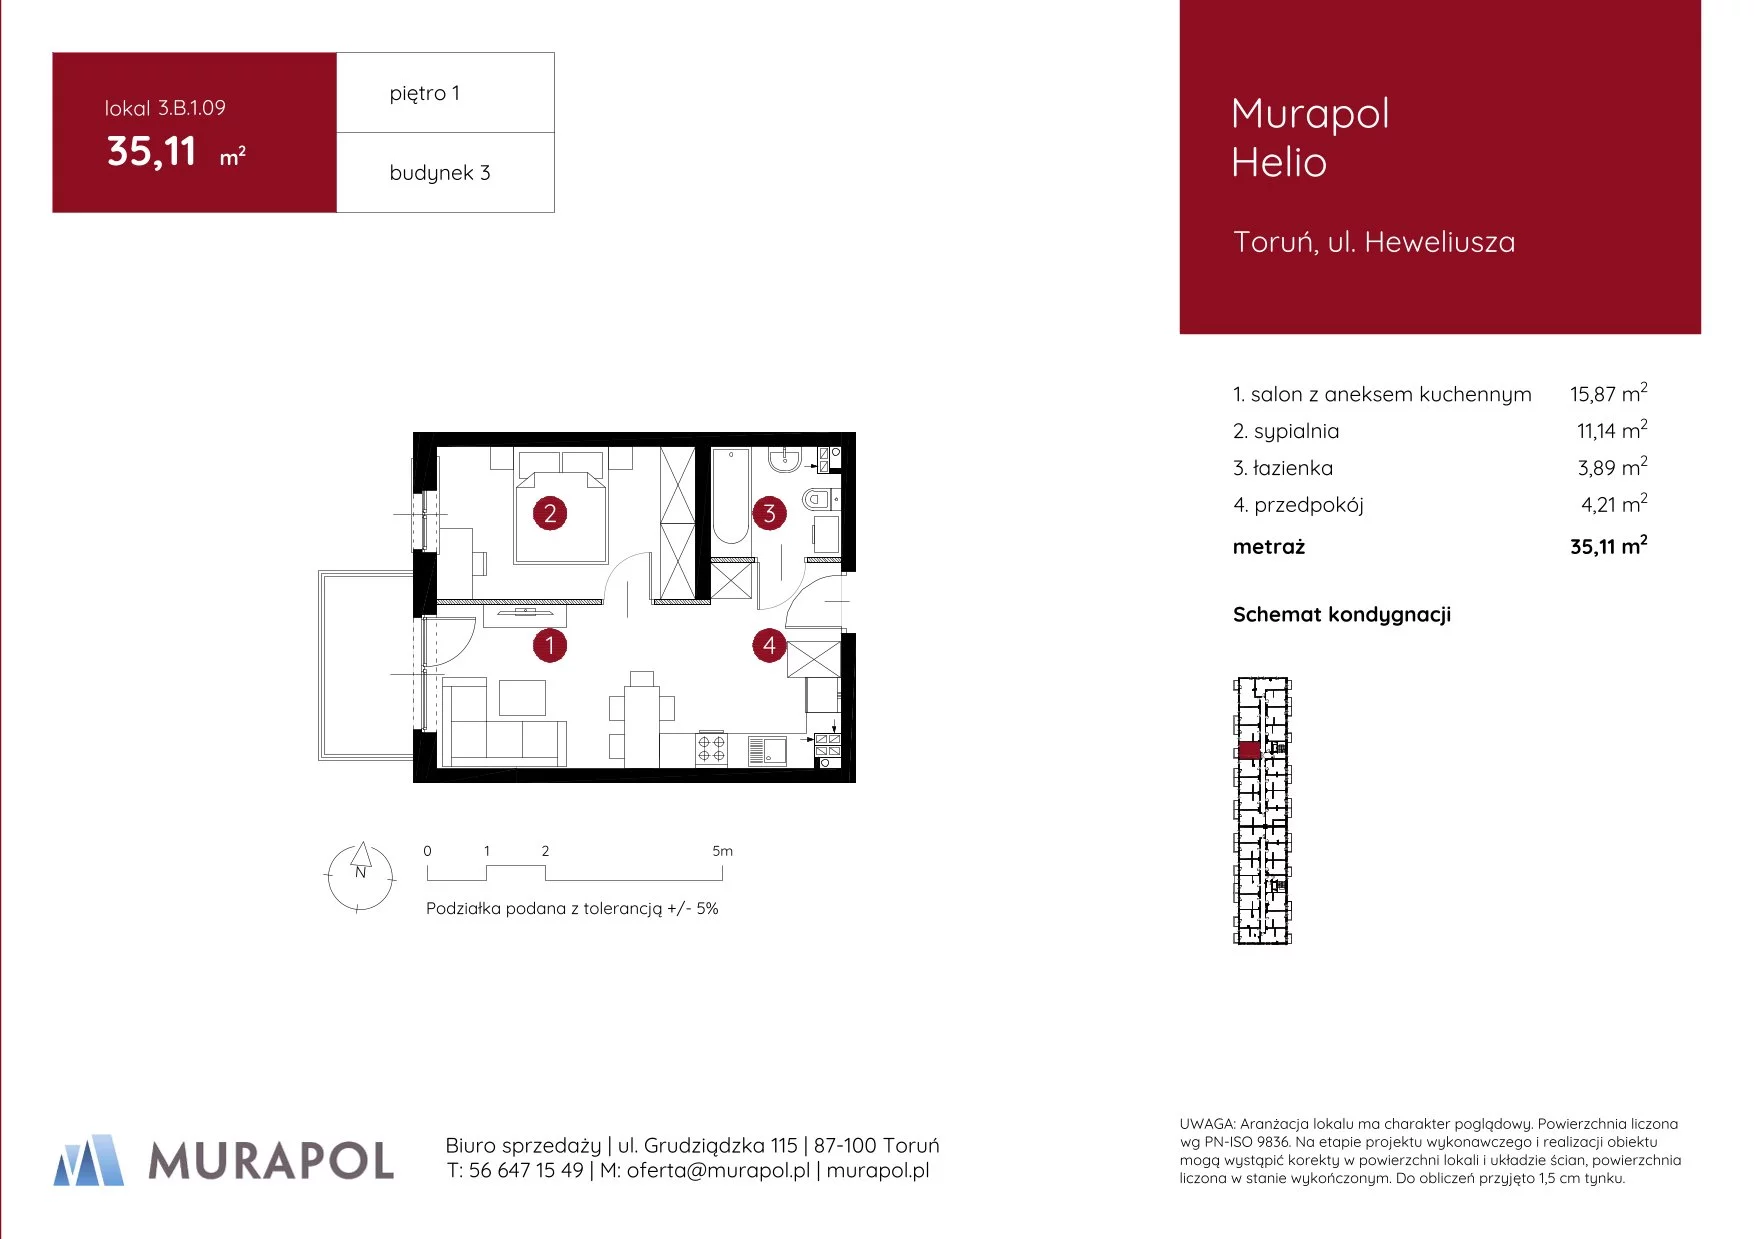 Mieszkanie 35,11 m², piętro 1, oferta nr 3.B.1.09, Murapol Helio, Toruń, Wrzosy, JAR, ul. Heweliusza